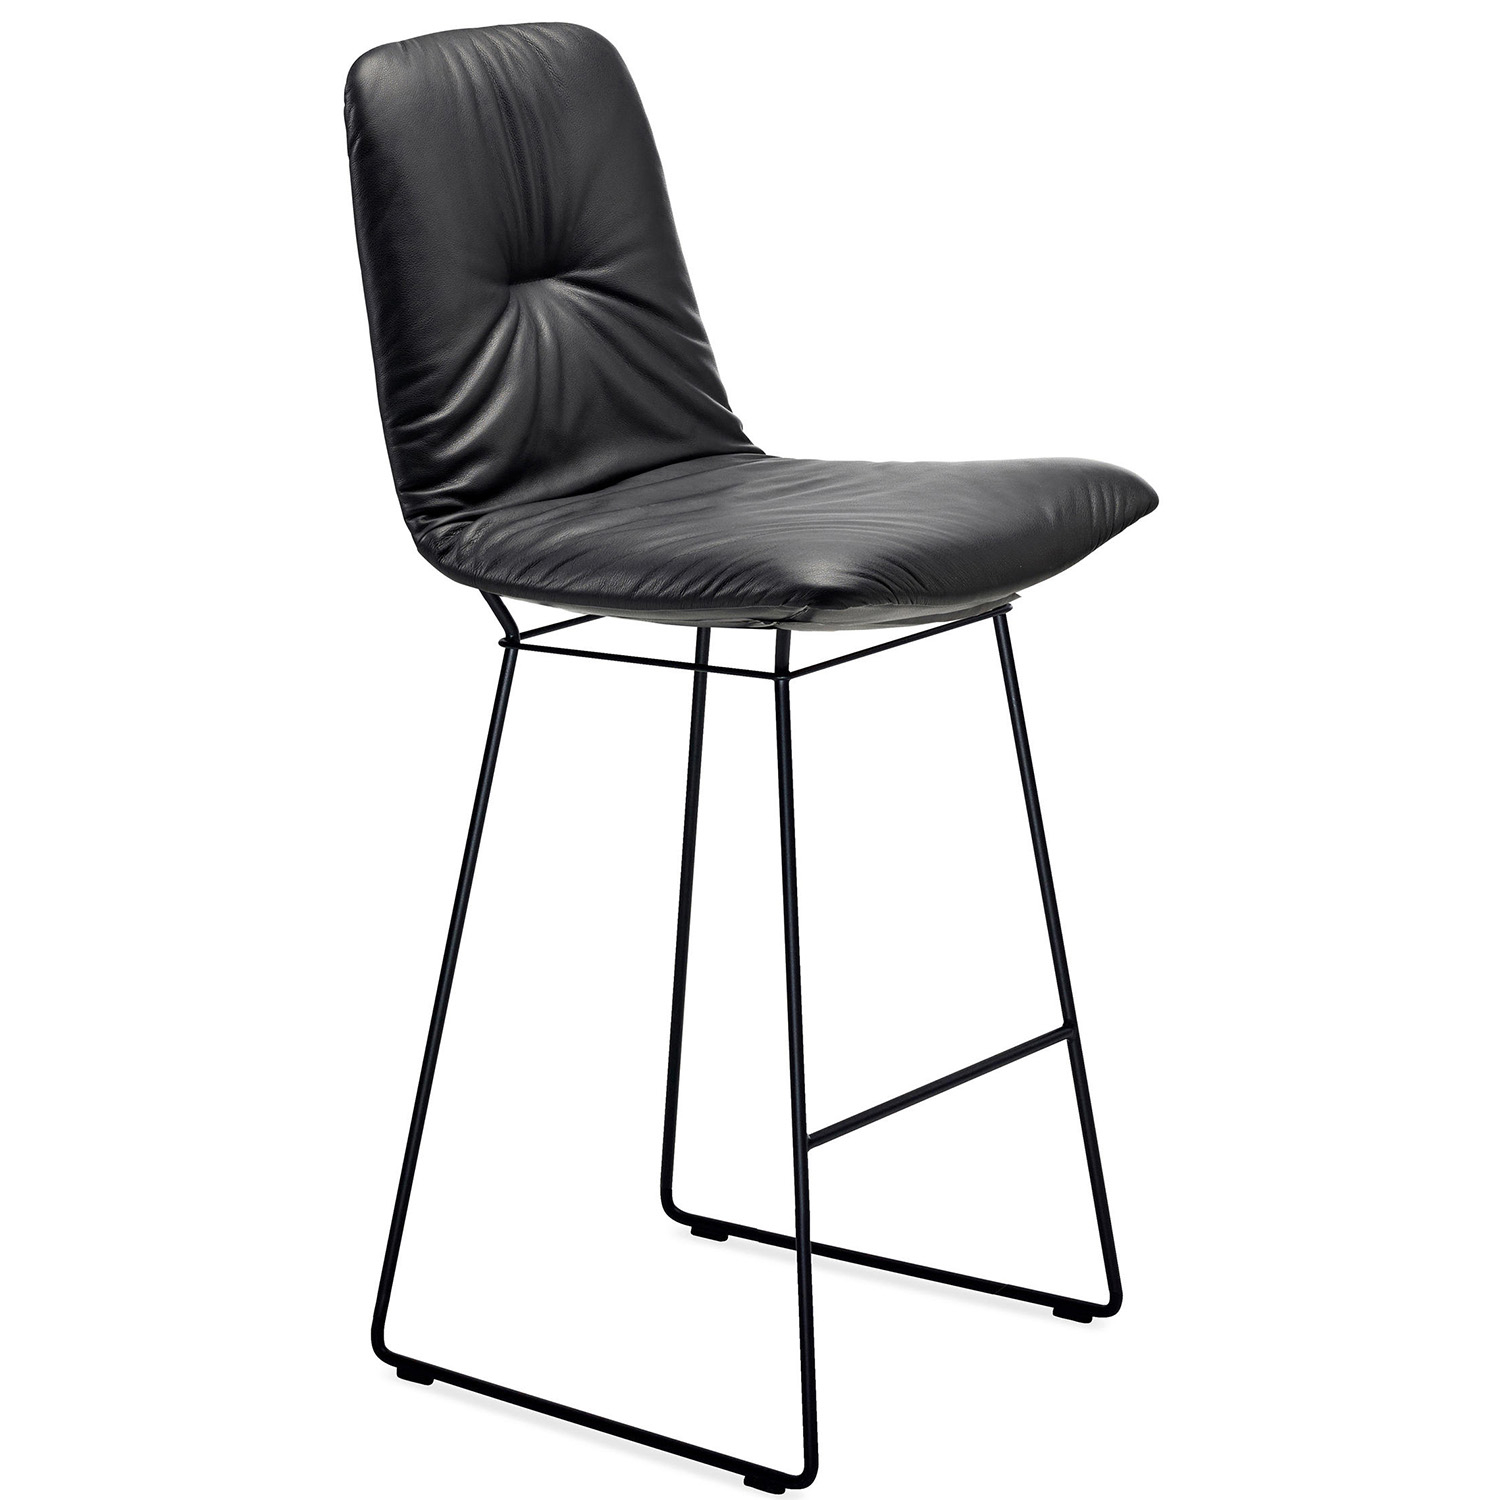 Freifrau Manufaktur designové barové židle Leya Barstool Medium (výška sedáku 72 cm)